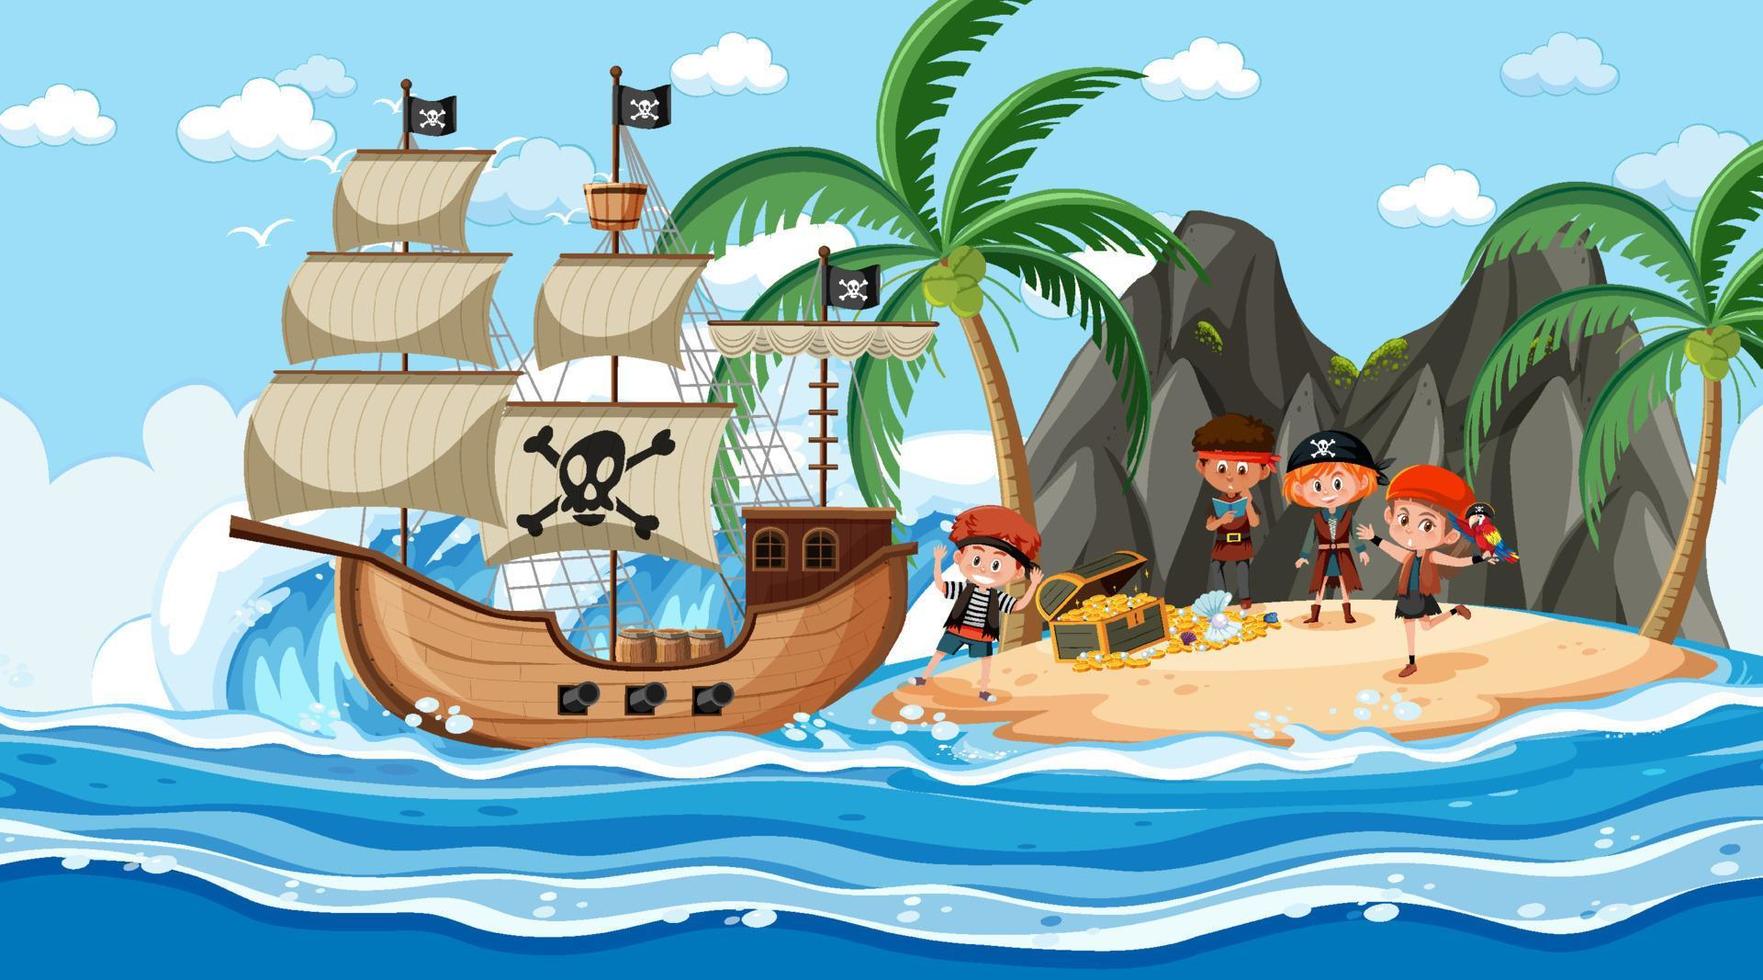 scena dell'isola del tesoro durante il giorno con bambini pirata vettore